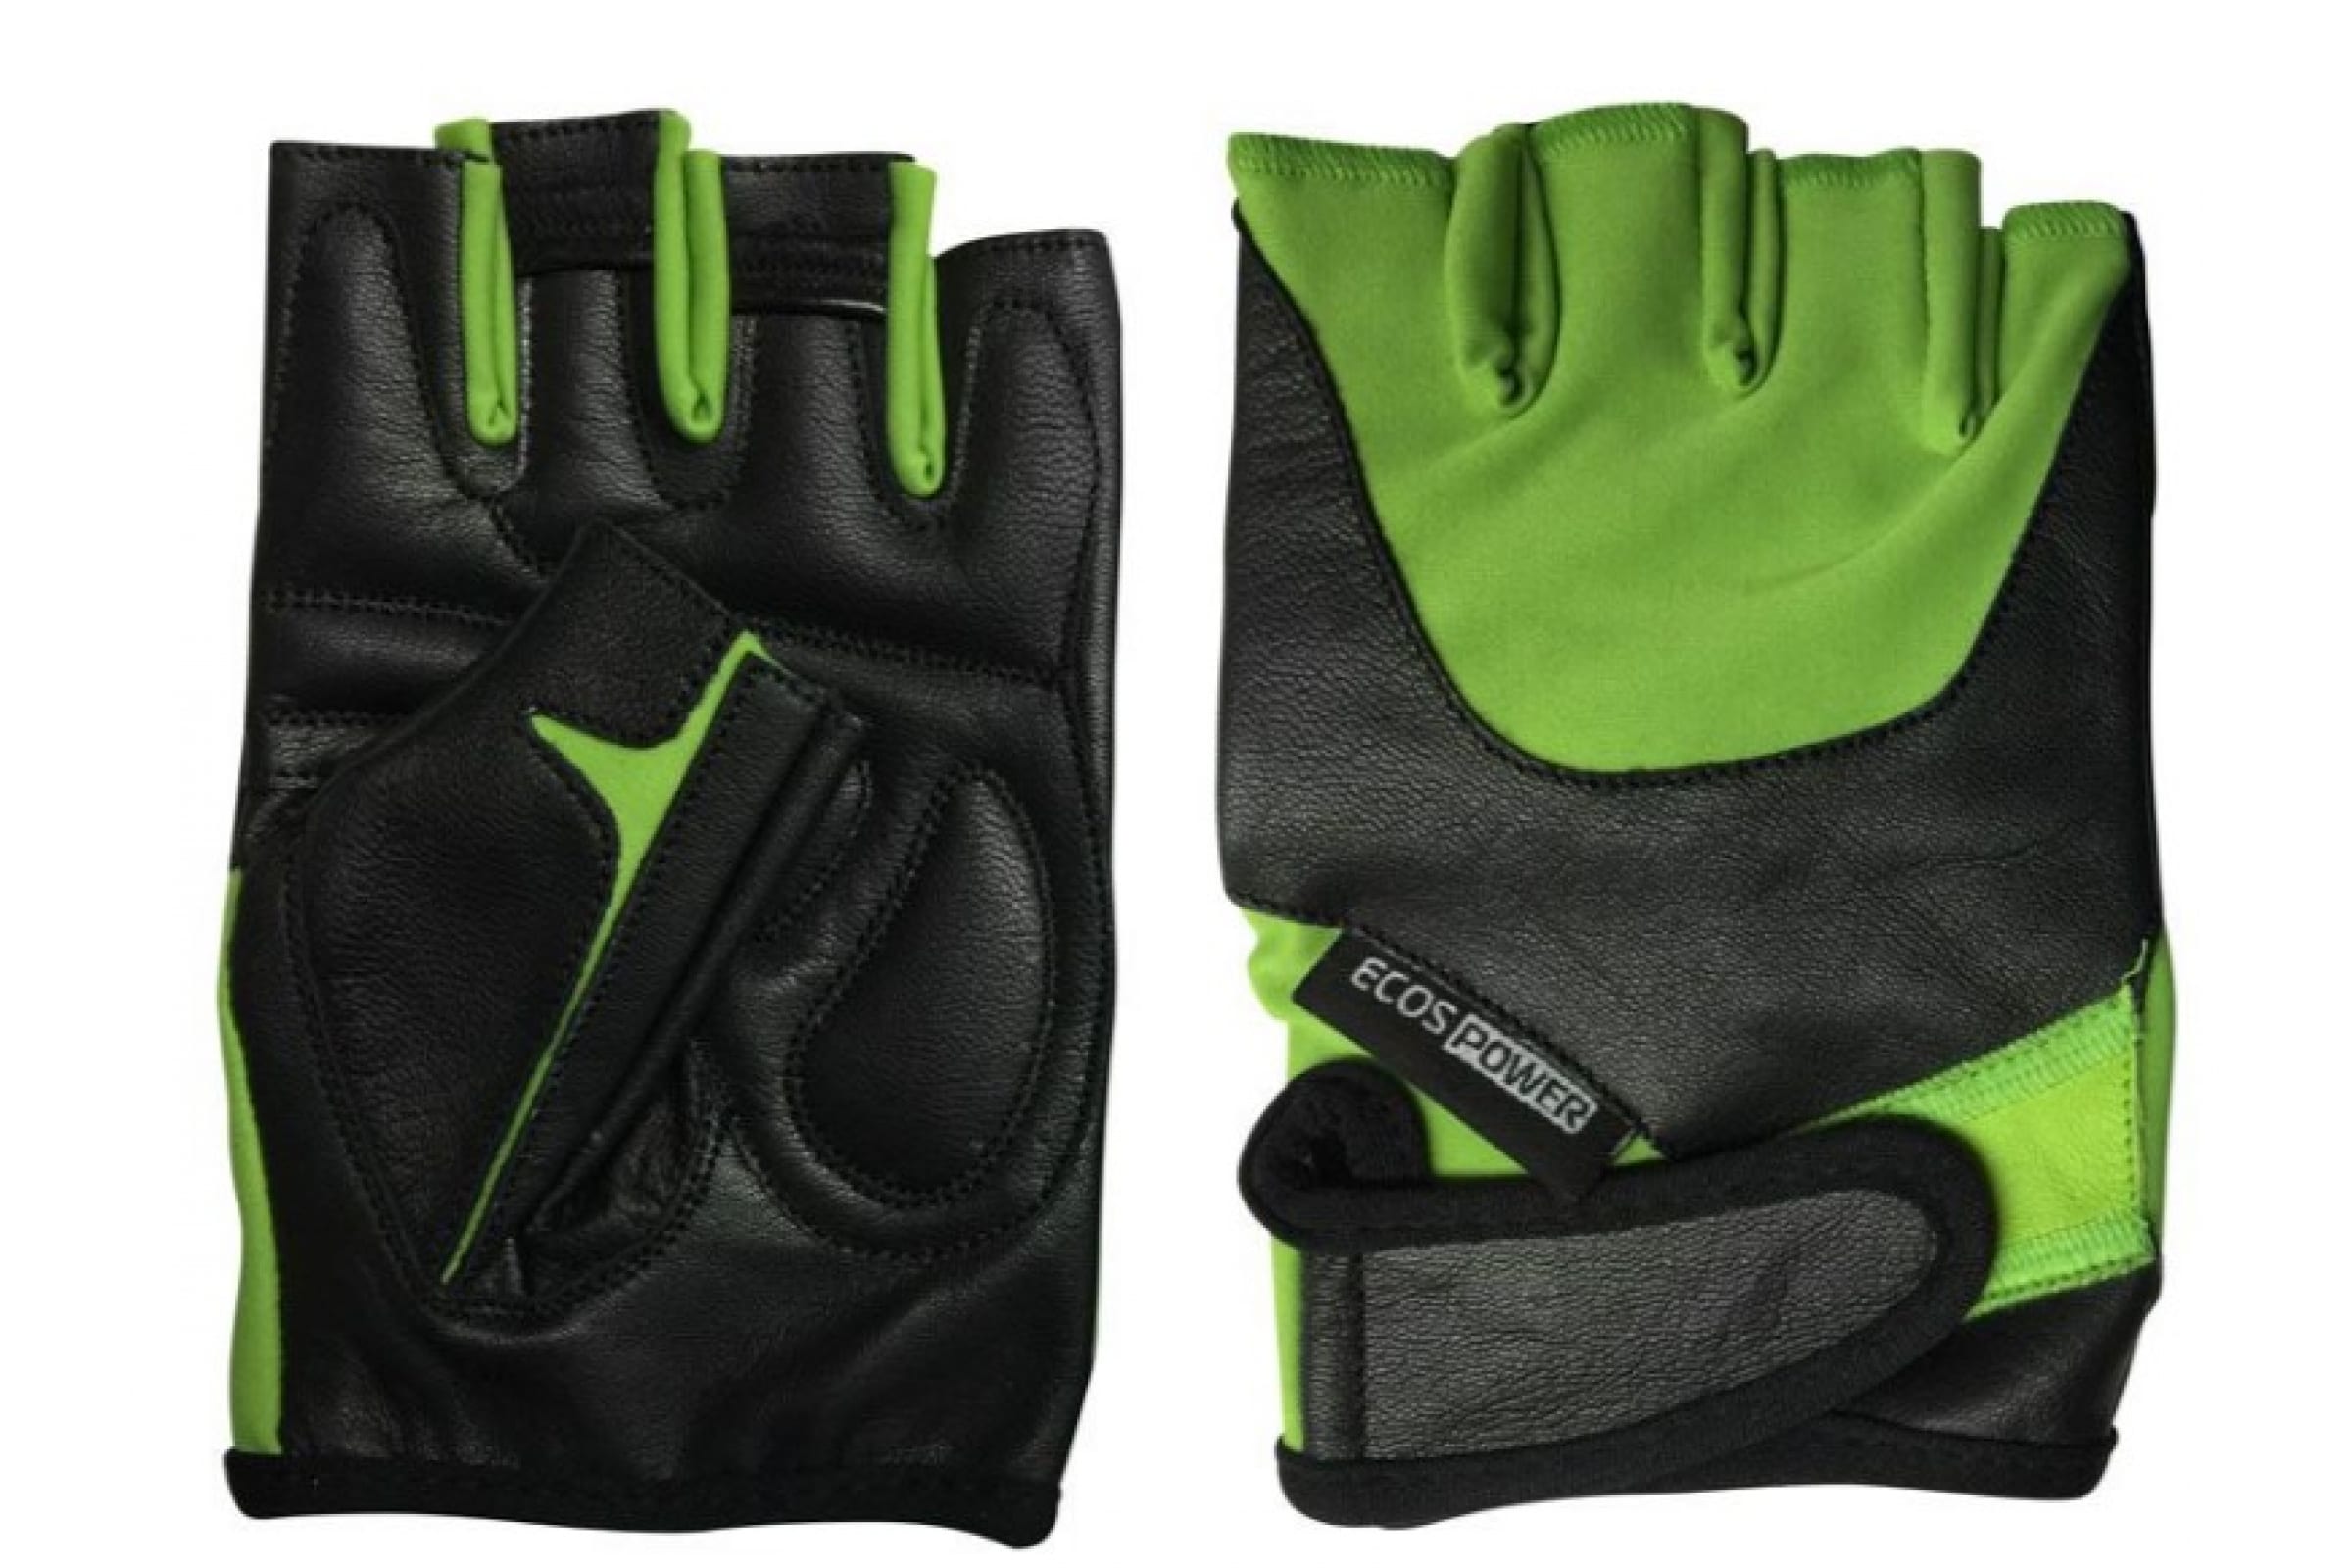 фото Перчатки для фитнеса 5102-gl, цвет: зеленый, размер: l ecos